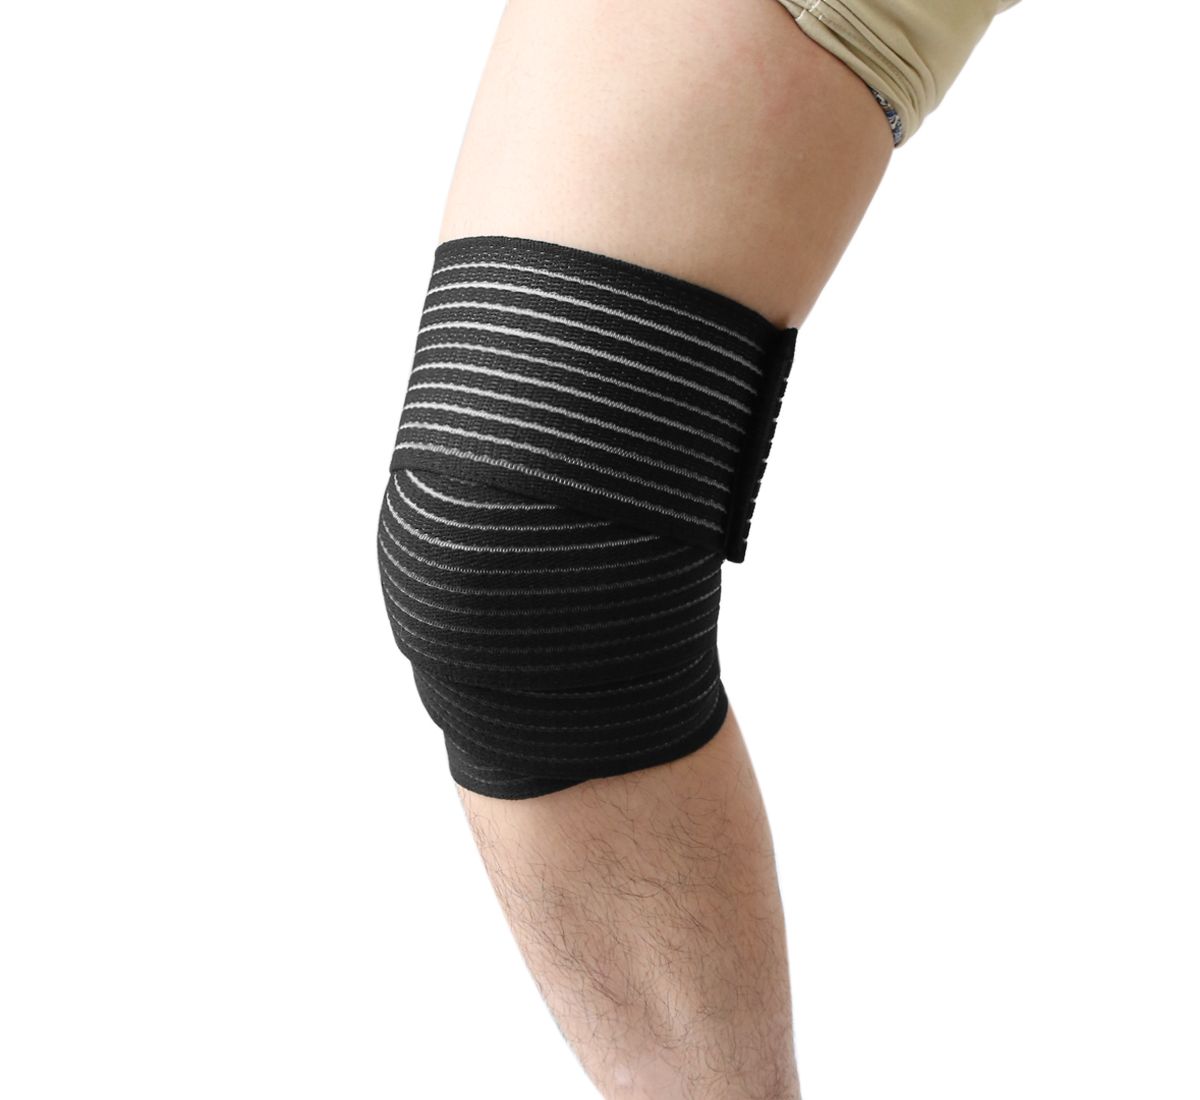 Застежка на крючок и петлю для поддержки колена, бандаж, спортивный защитный бандаж, ремень Unique Bargains